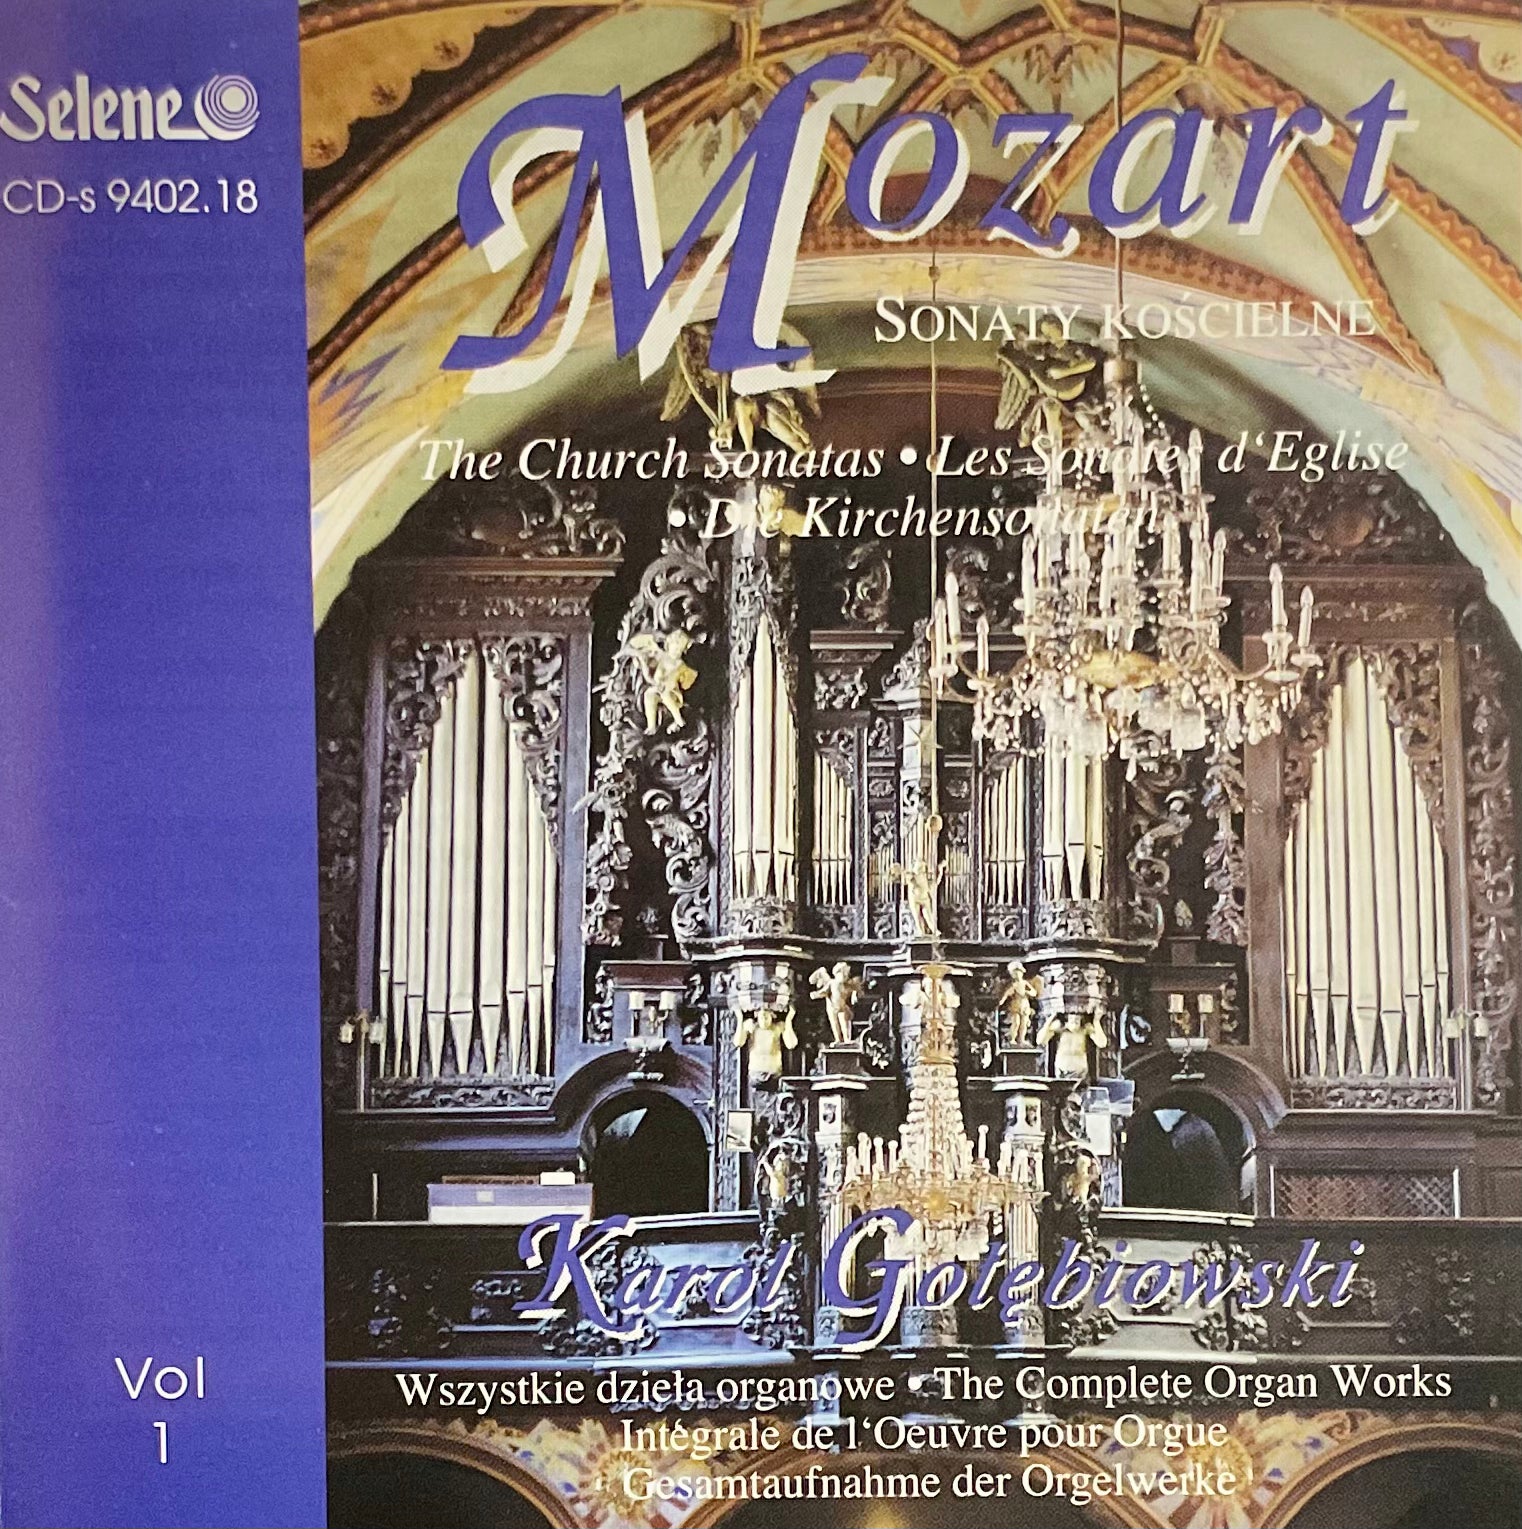 Mozart - Sonaty Koscielne vol 1